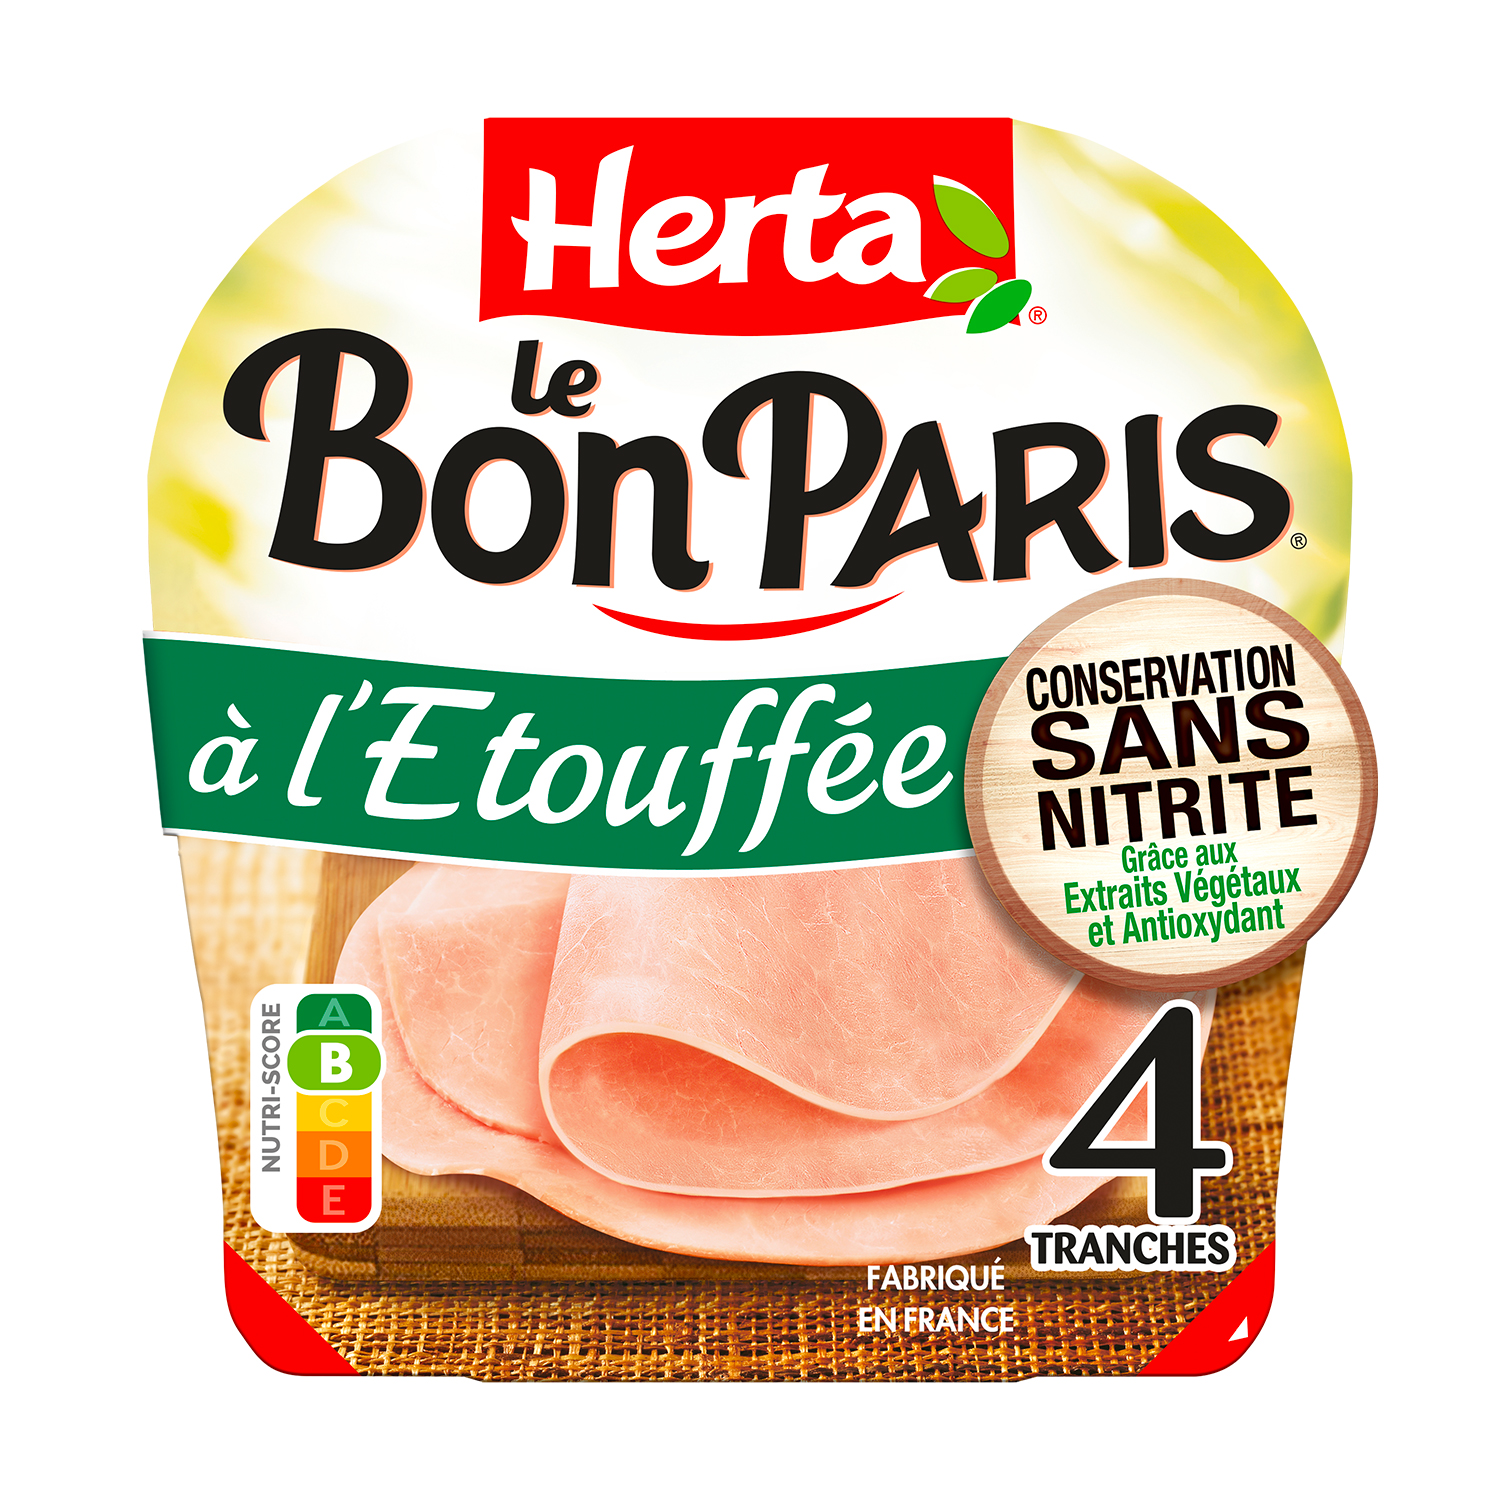 Herta® – le Bon Paris® Conservation sans Nitrite